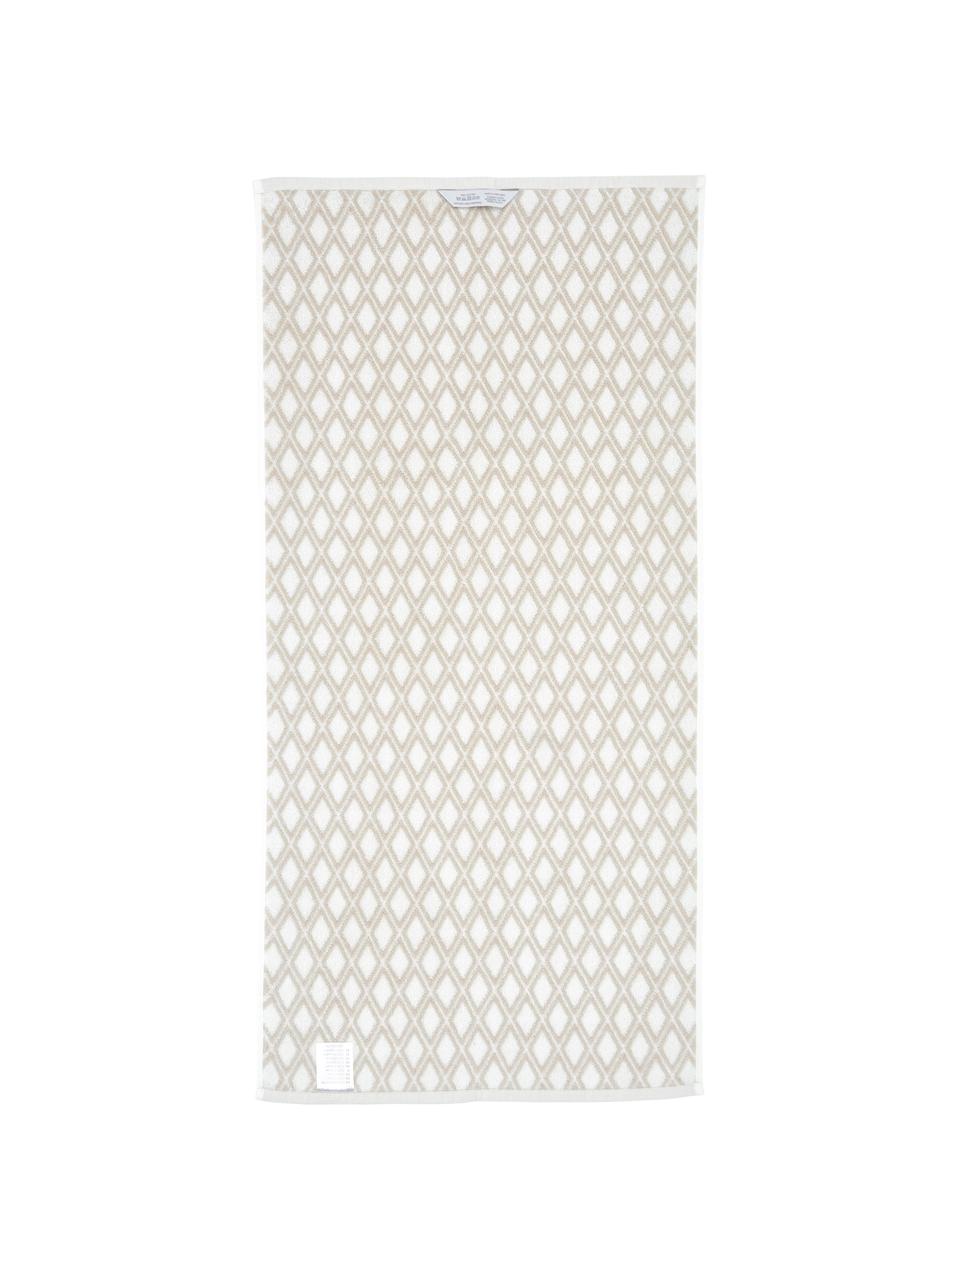 Wende-Handtuch Ava mit grafischem Muster, Sandfarben, Cremeweiss, Handtuch, B 50 x L 100 cm, 2 Stück